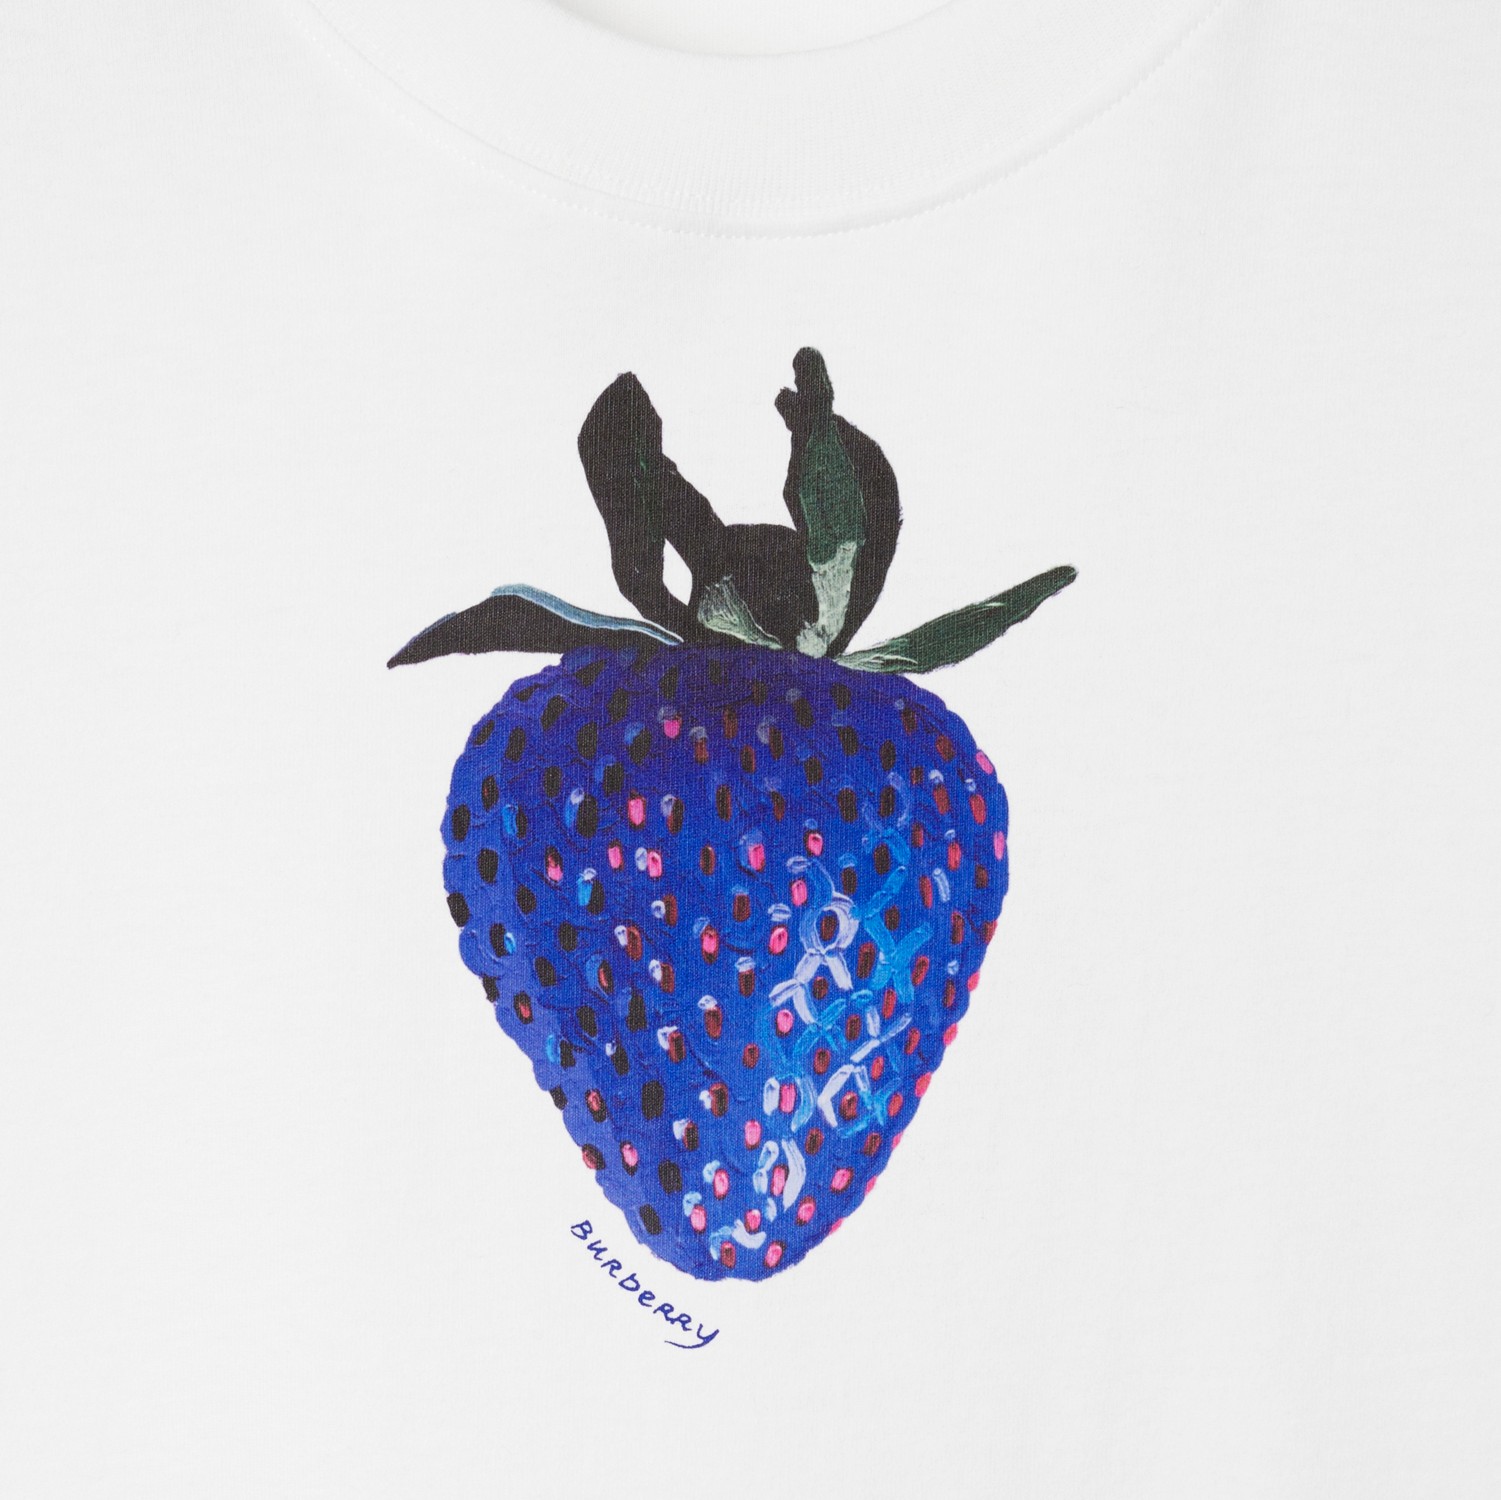 Baumwoll-T-Shirt mit Erdbeermotiv